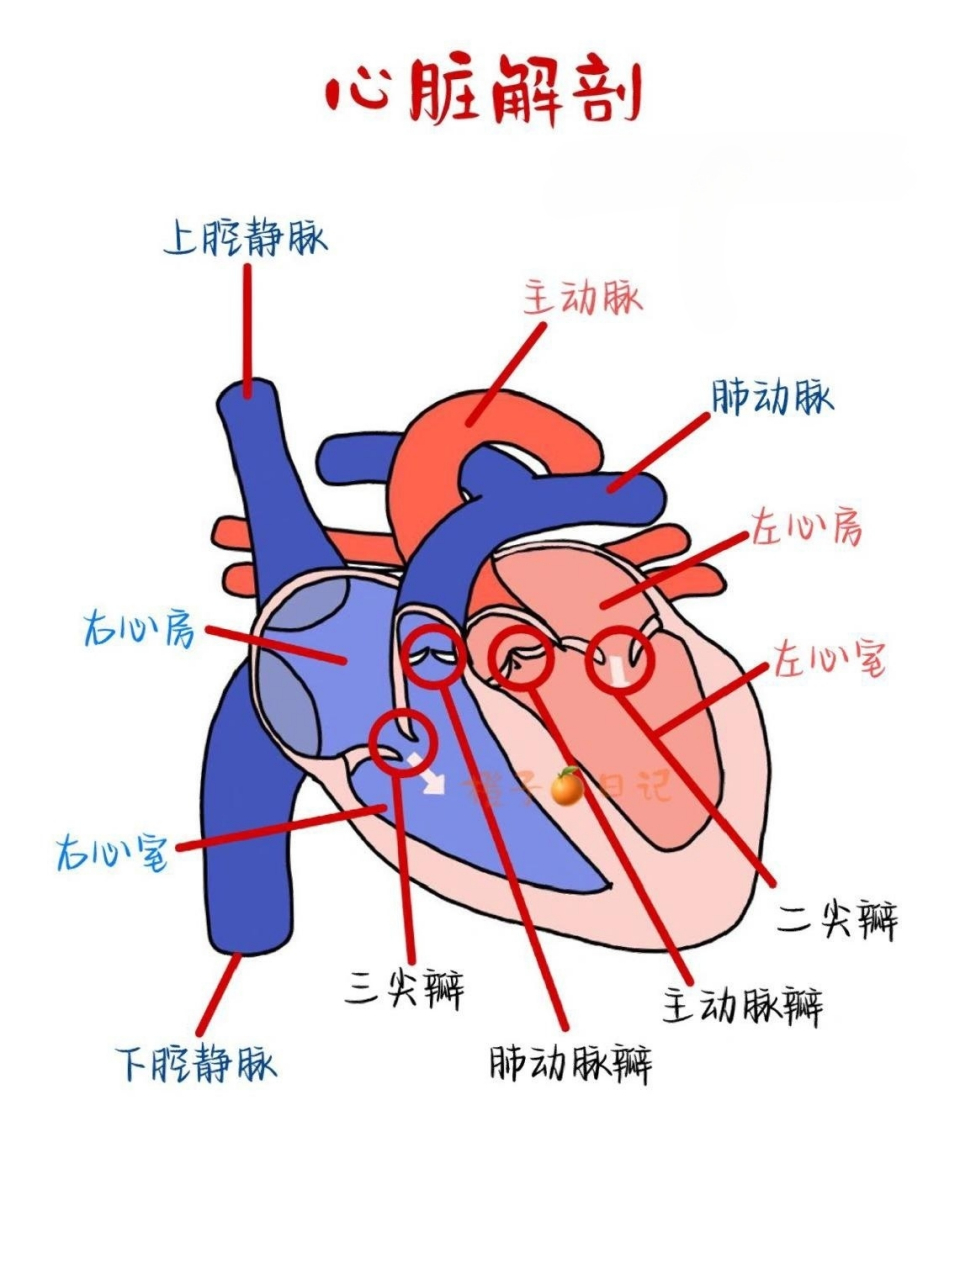 心脏腔室结构图图片